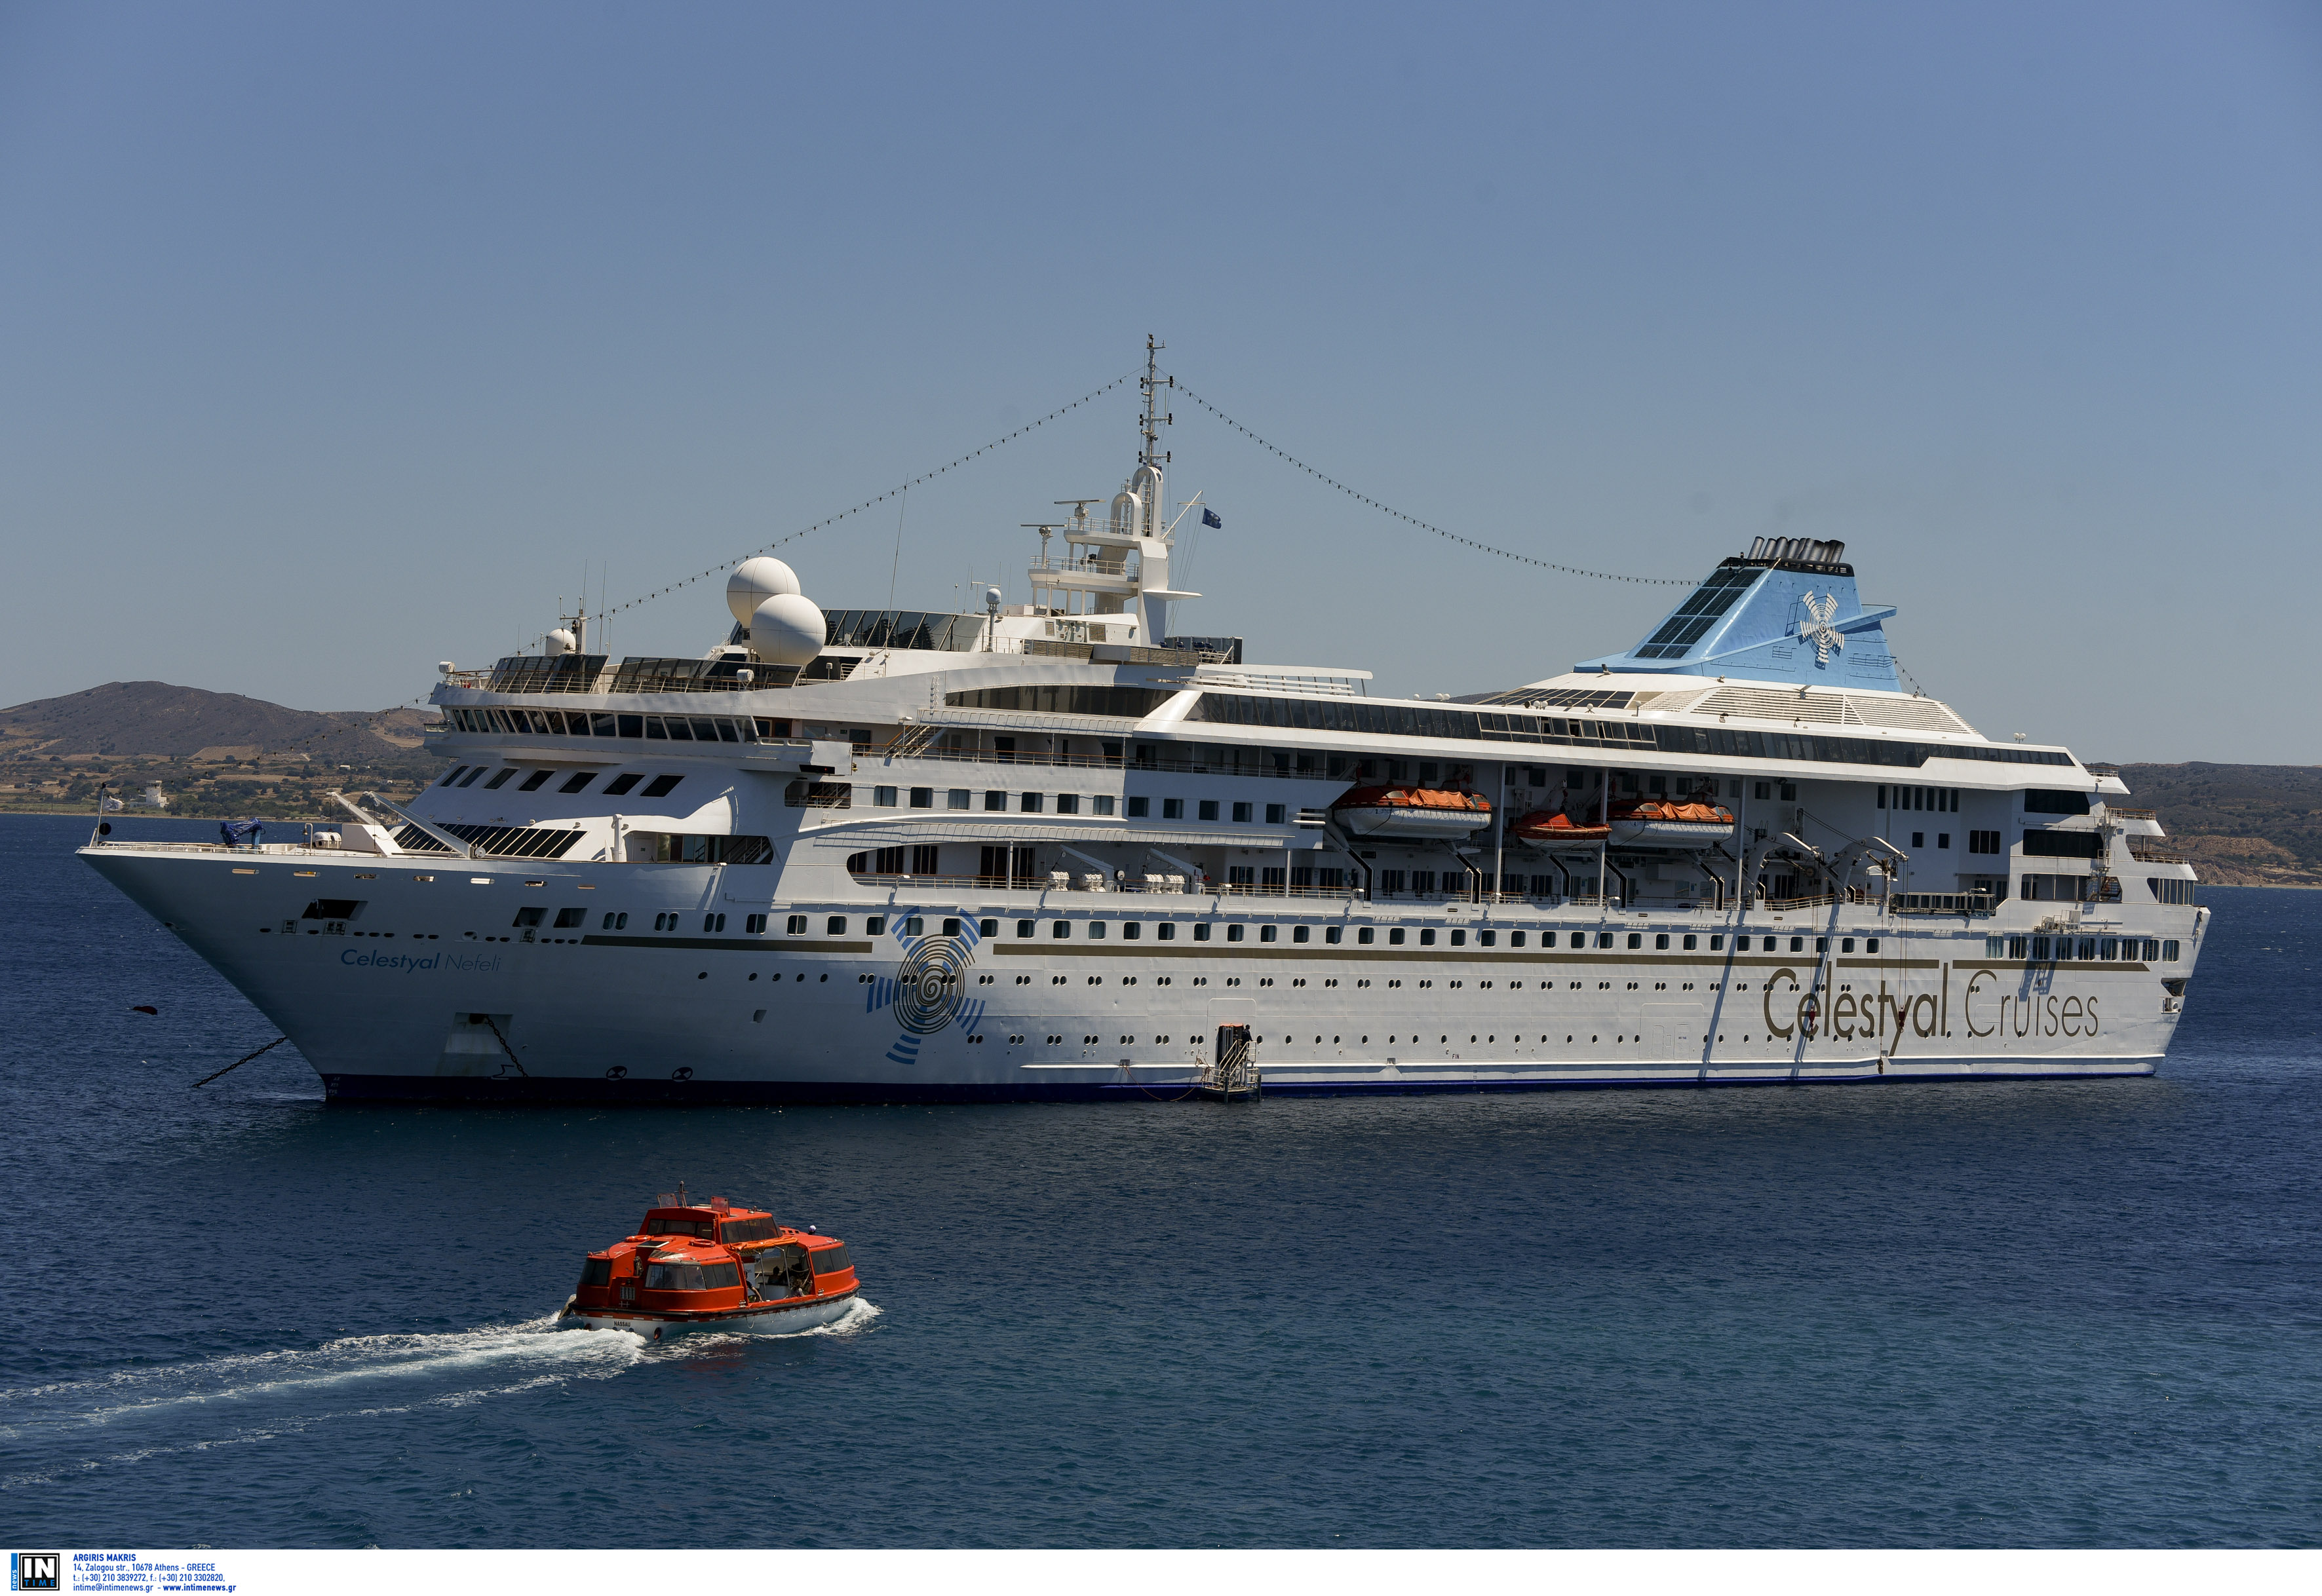 Η Celestyal Cruises εγκαταλείπει το Λαύριο και «μετακομίζει»στον Πειραιά